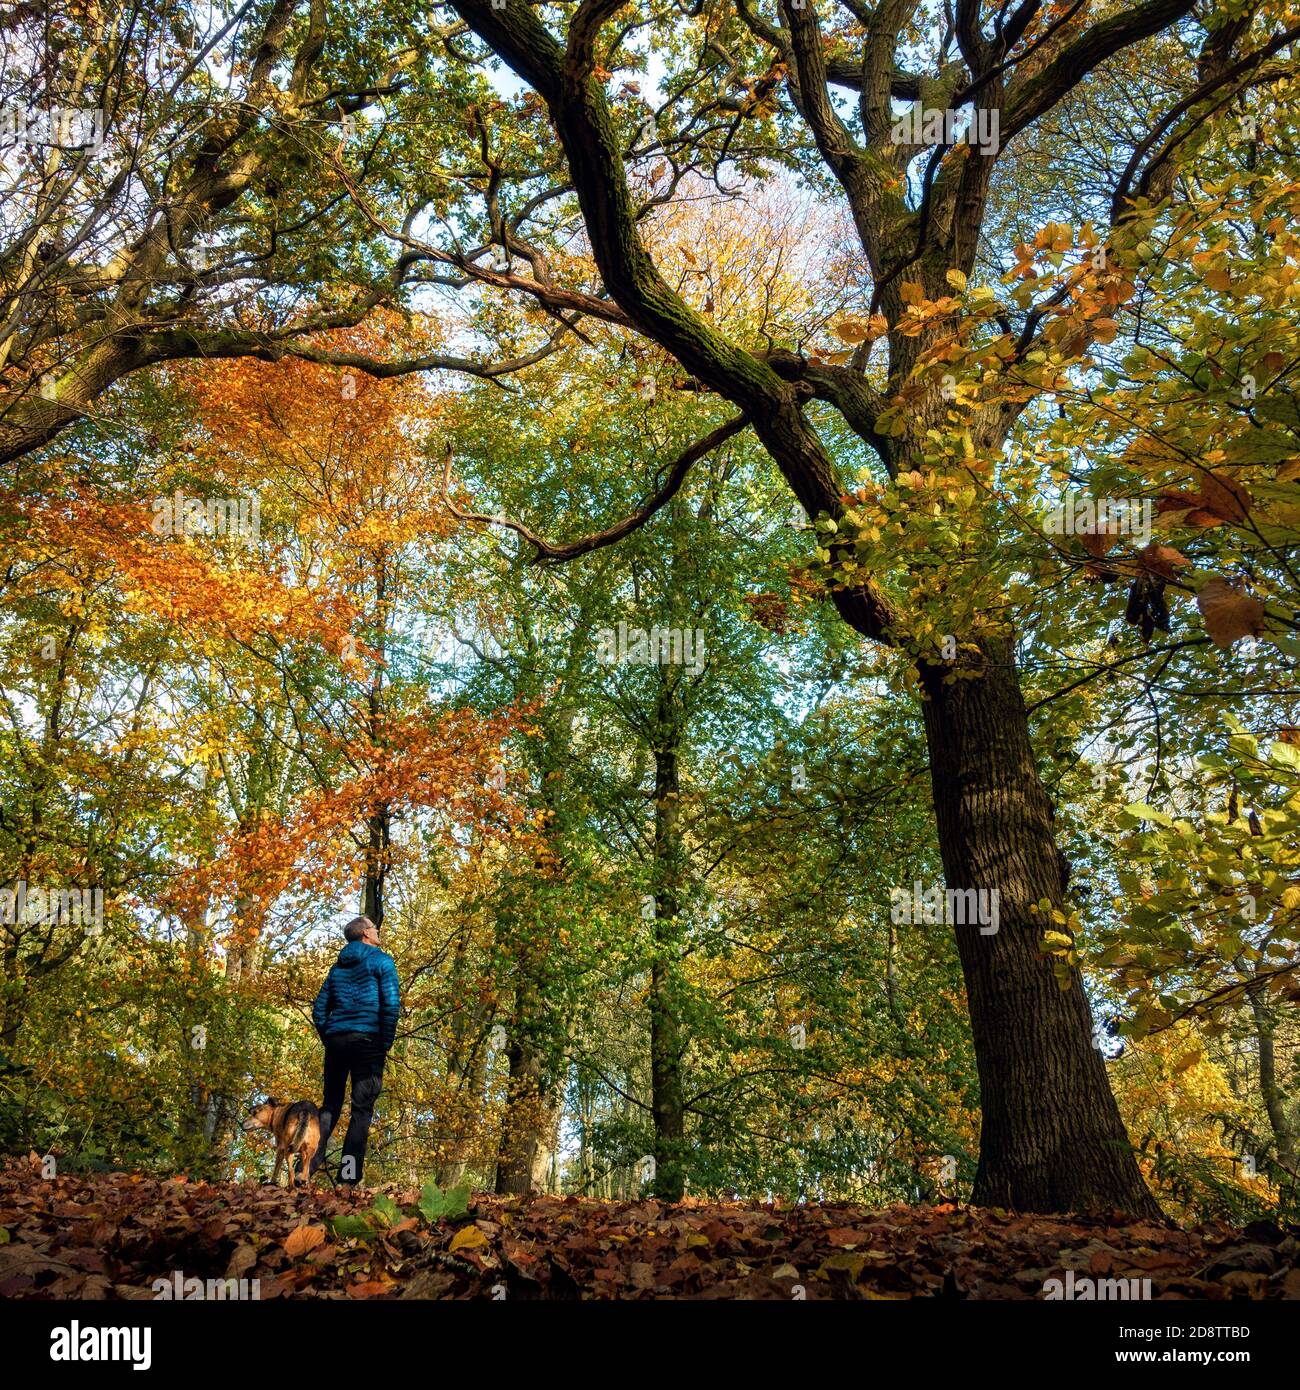 Ilkley, Großbritannien. 1. November 2020: Person, die die Herbstfarben in den Bäumen und Blättern bewundert, während sie mit einem Hund spazieren geht. Middleton Woods ist berühmt für seine Bluebells, aber auch das Herbstlaub ist spektakulär, Großbritannien Rebecca Cole/Alamy News (c) Stockfoto